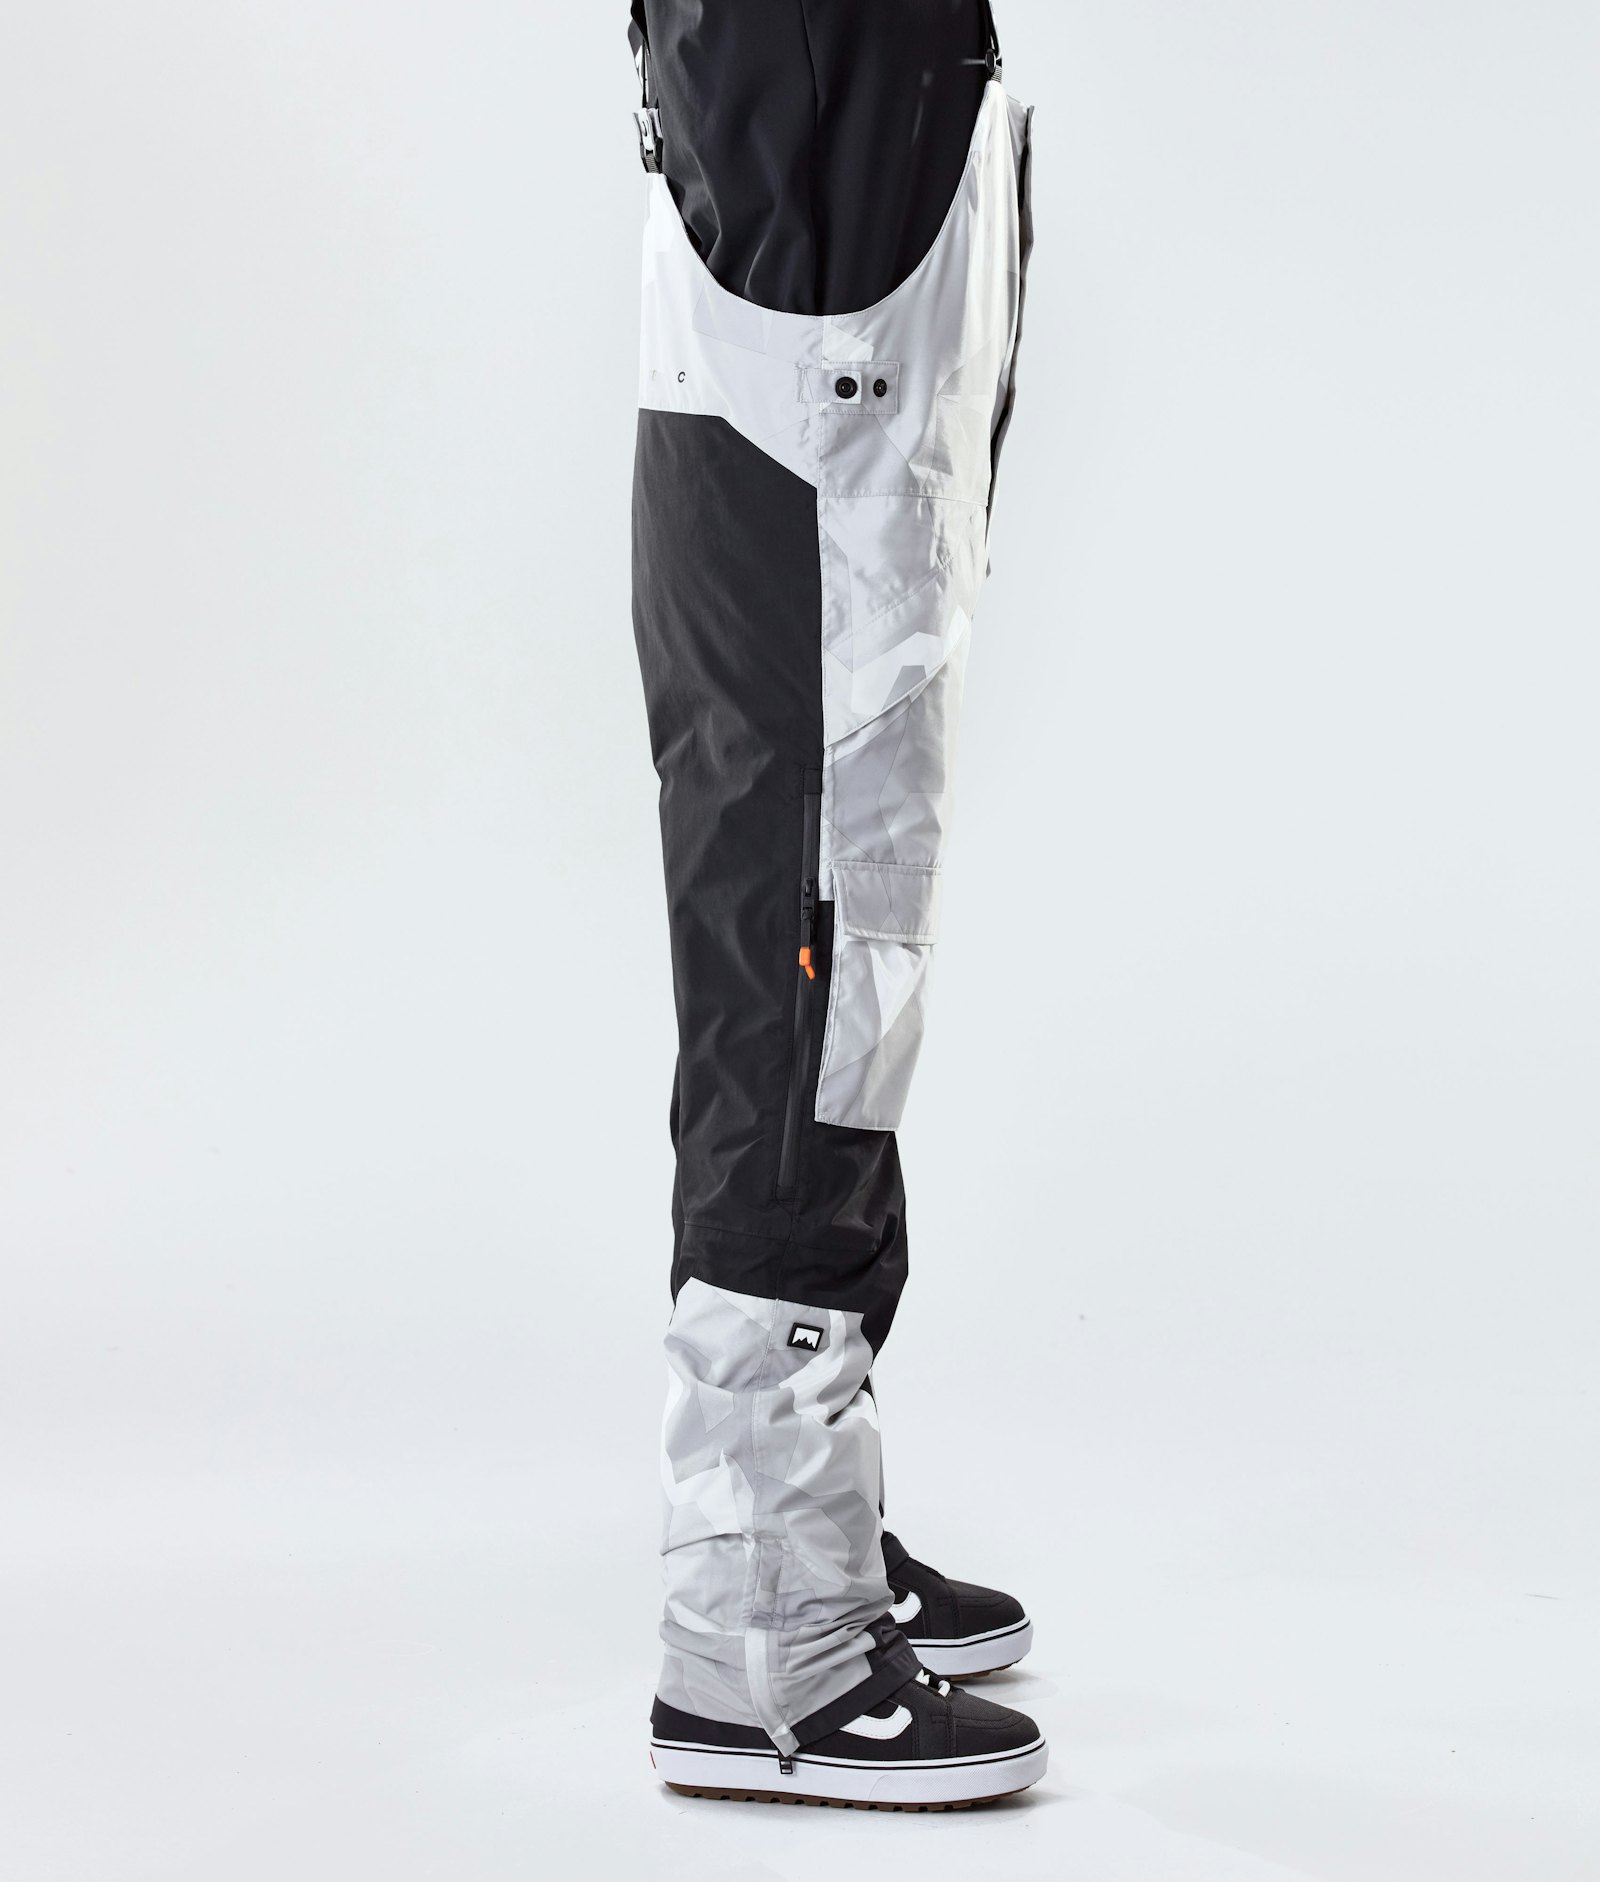 Fawk 2020 スノボ パンツ メンズ Snow Camo/Black